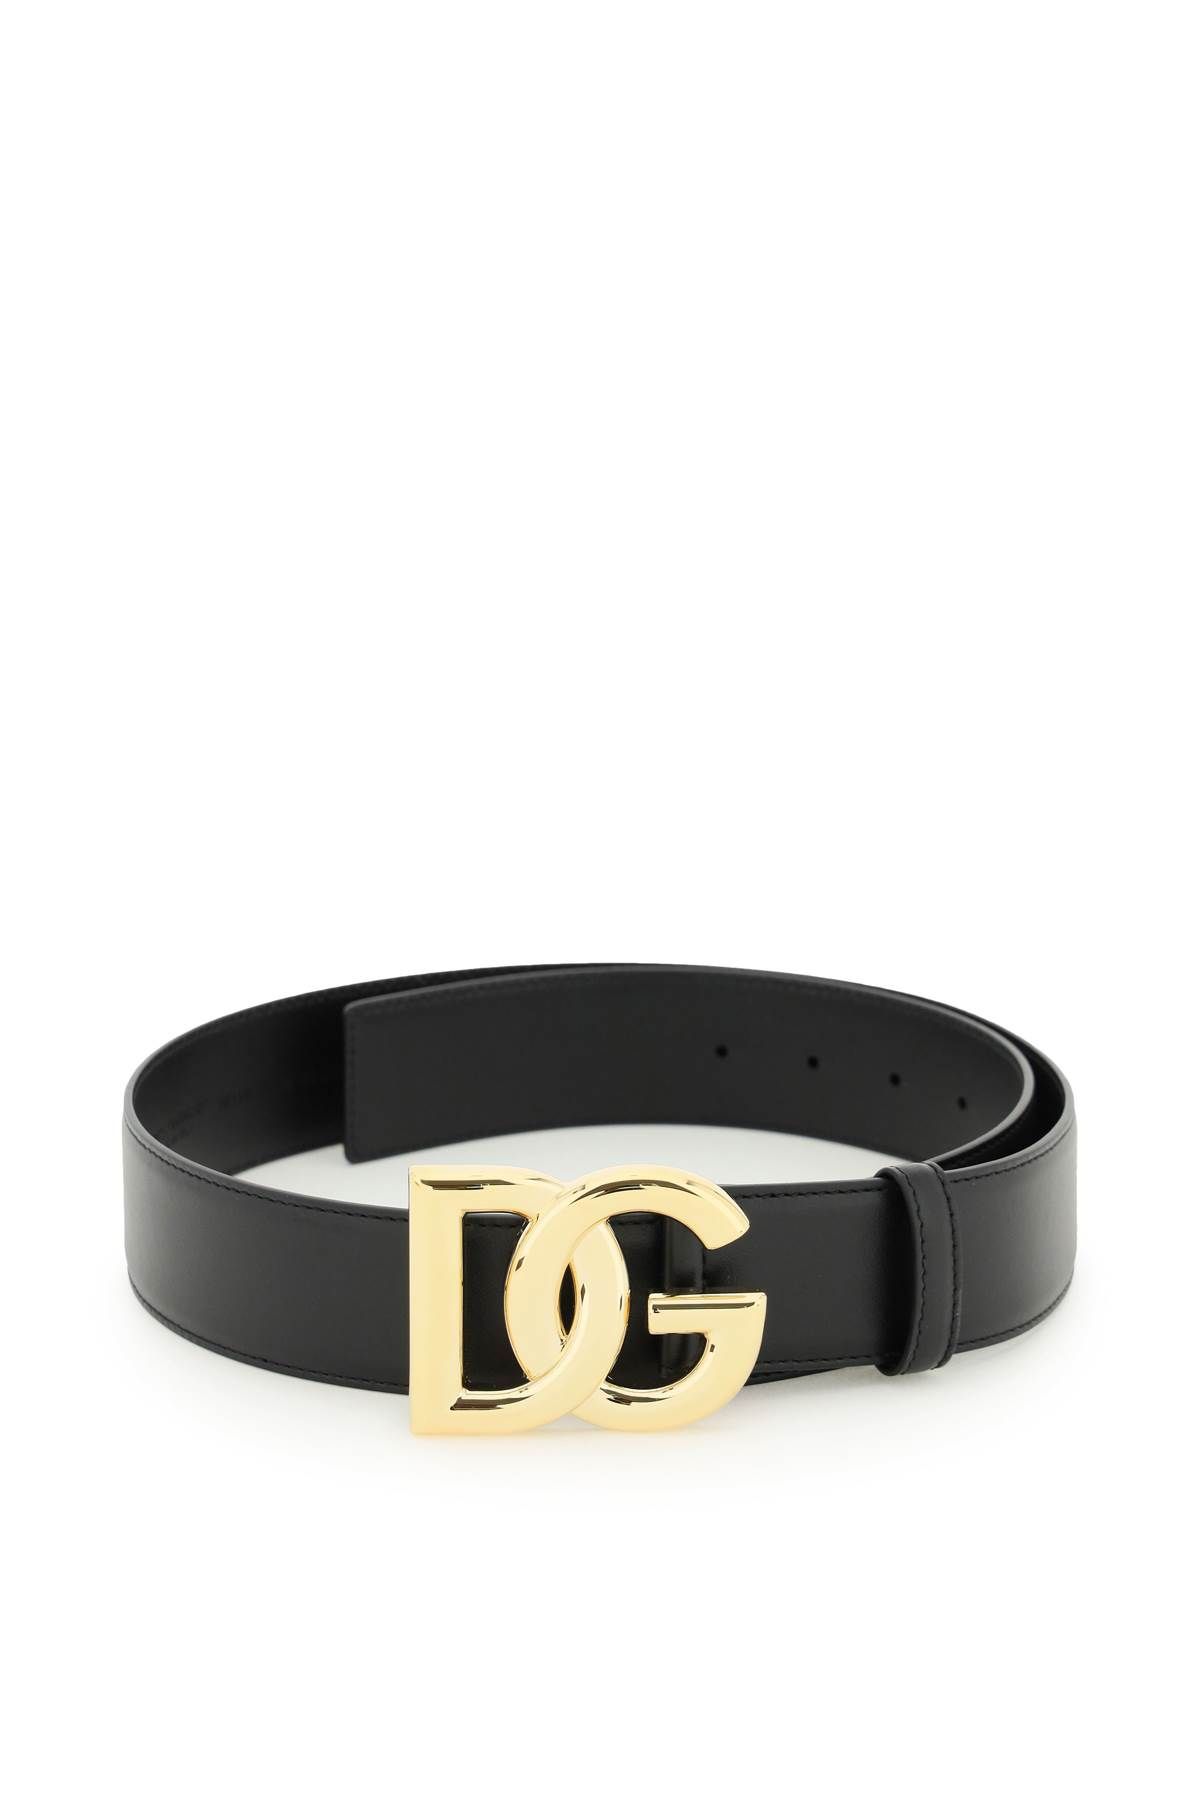 Dolce & Gabbana DOLCE & GABBANA leather belt with logo buckle